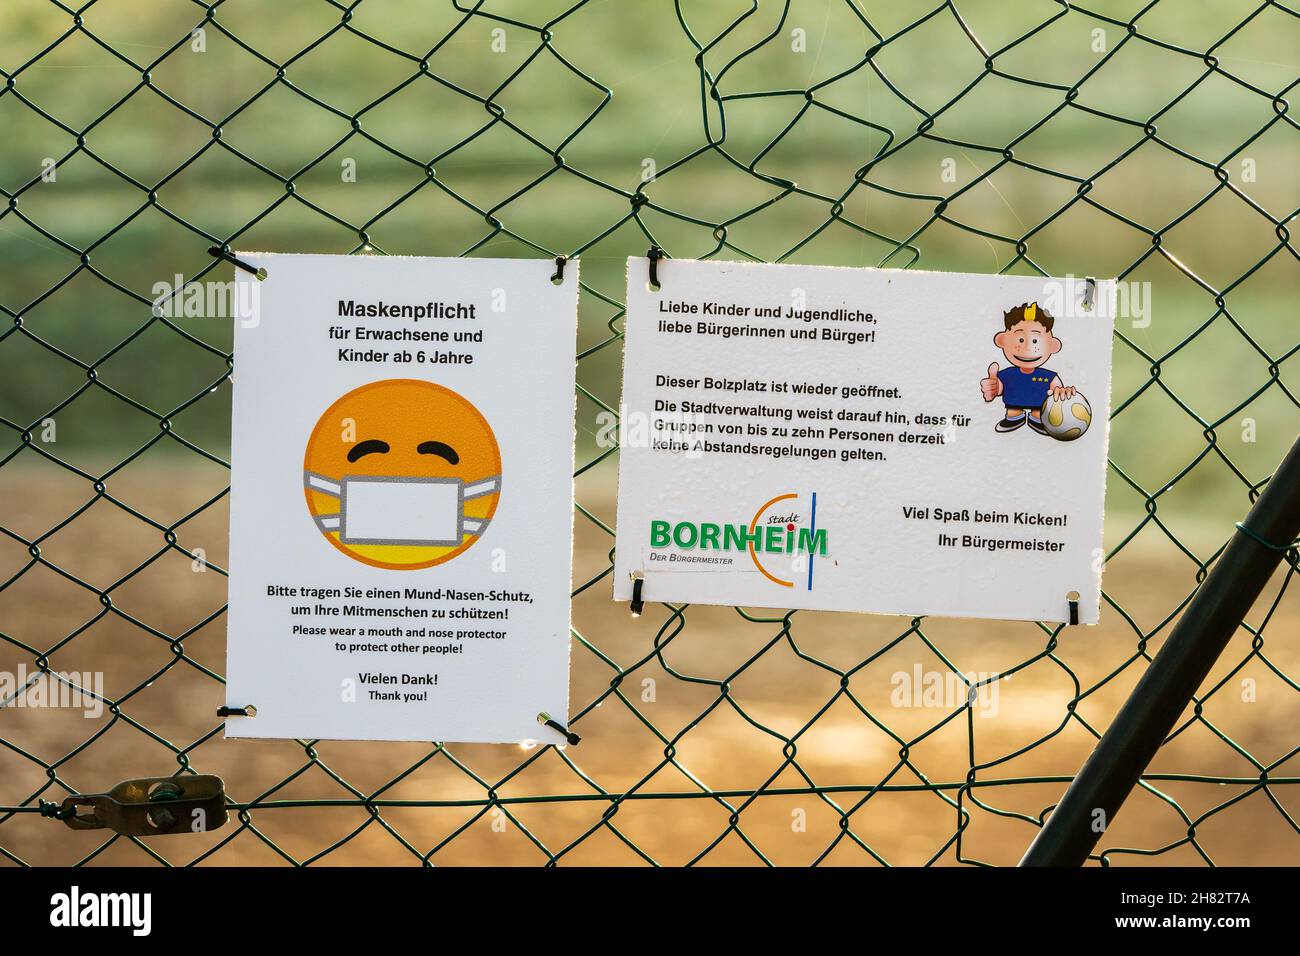 Bornheim, Deutschland - 10. Dezember 2020: Schilder am Kettengliederzaun mit deutschem Text "Fußballplatz ist wieder geöffnet. Keine Distanzierungsregeln für Gruppen von zehn Personen.“ Stockfoto